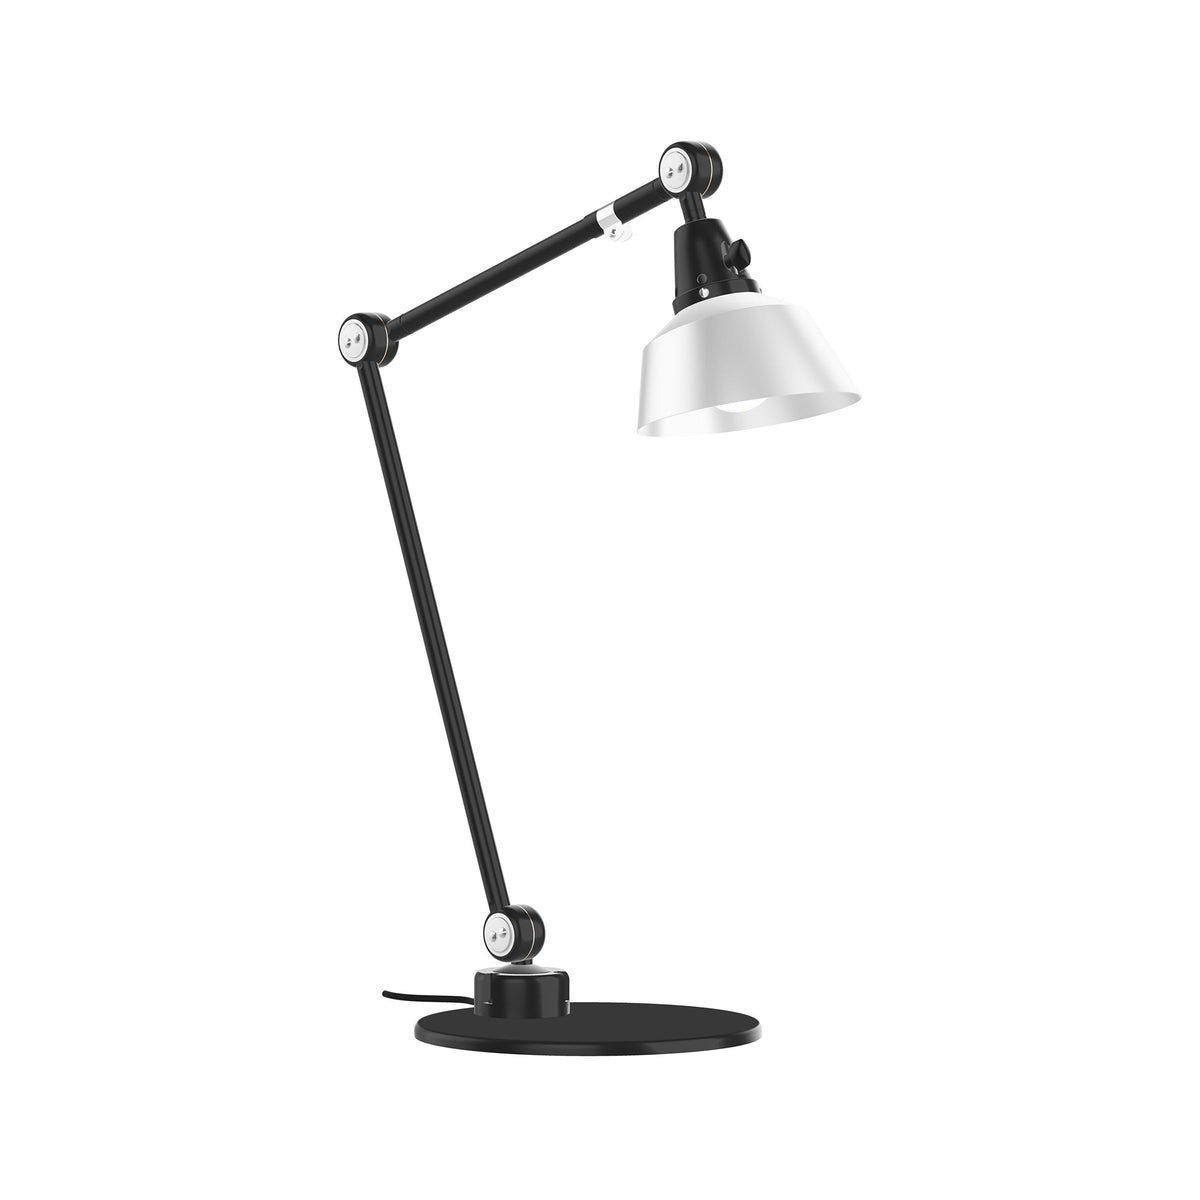 Lampe de bureau Midgard modular 551 noire/Alu anodisé - 37+ Design